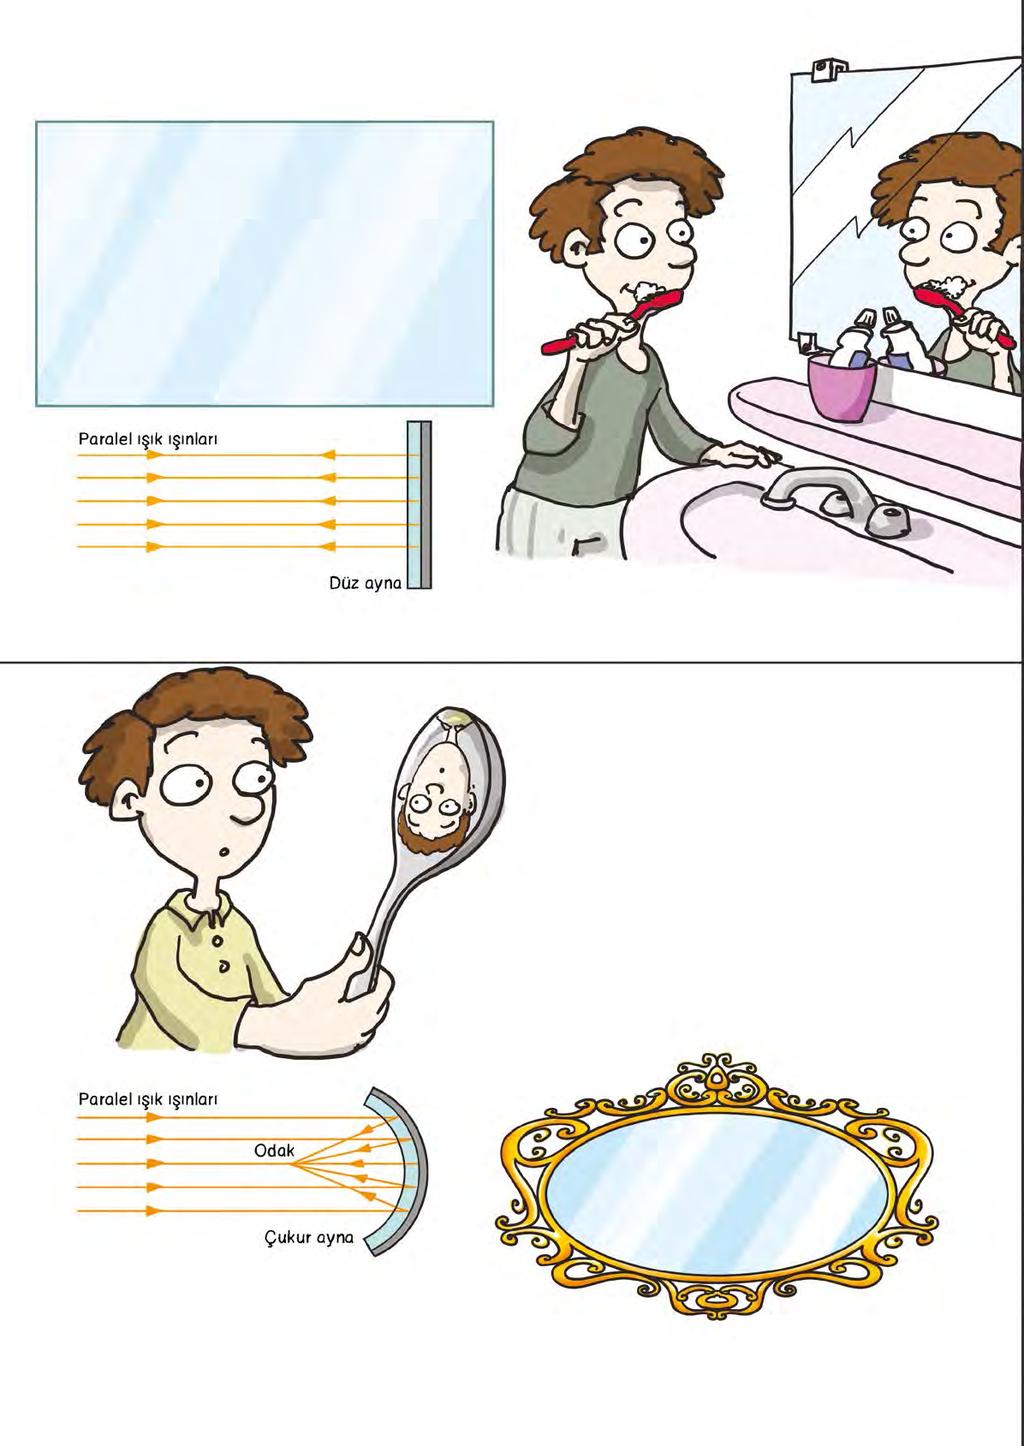 Çeşit Çeşit Ayna Var Düz ayna Bu ayna en yaygın olarak kullanılan aynadır. Düz aynadan yansıyan cismin görüntüsü cisimle aynı boyda ve aynı görünümdedir.